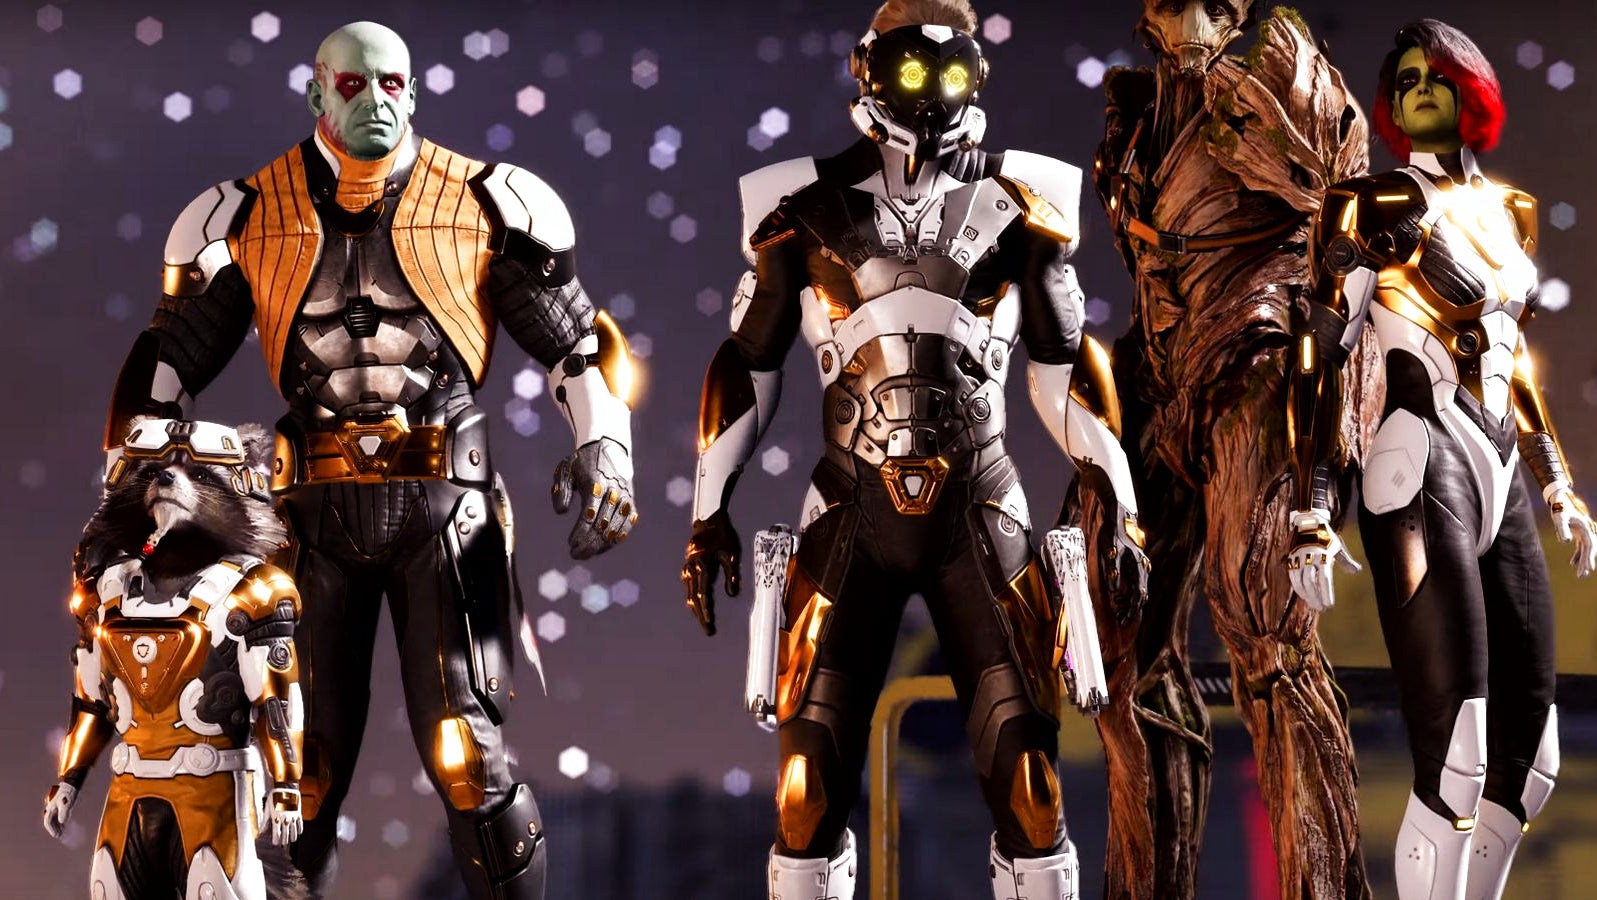 Bilder zu Guardians of the Galaxy hat anfangs enttäuscht, sagt Square Enix